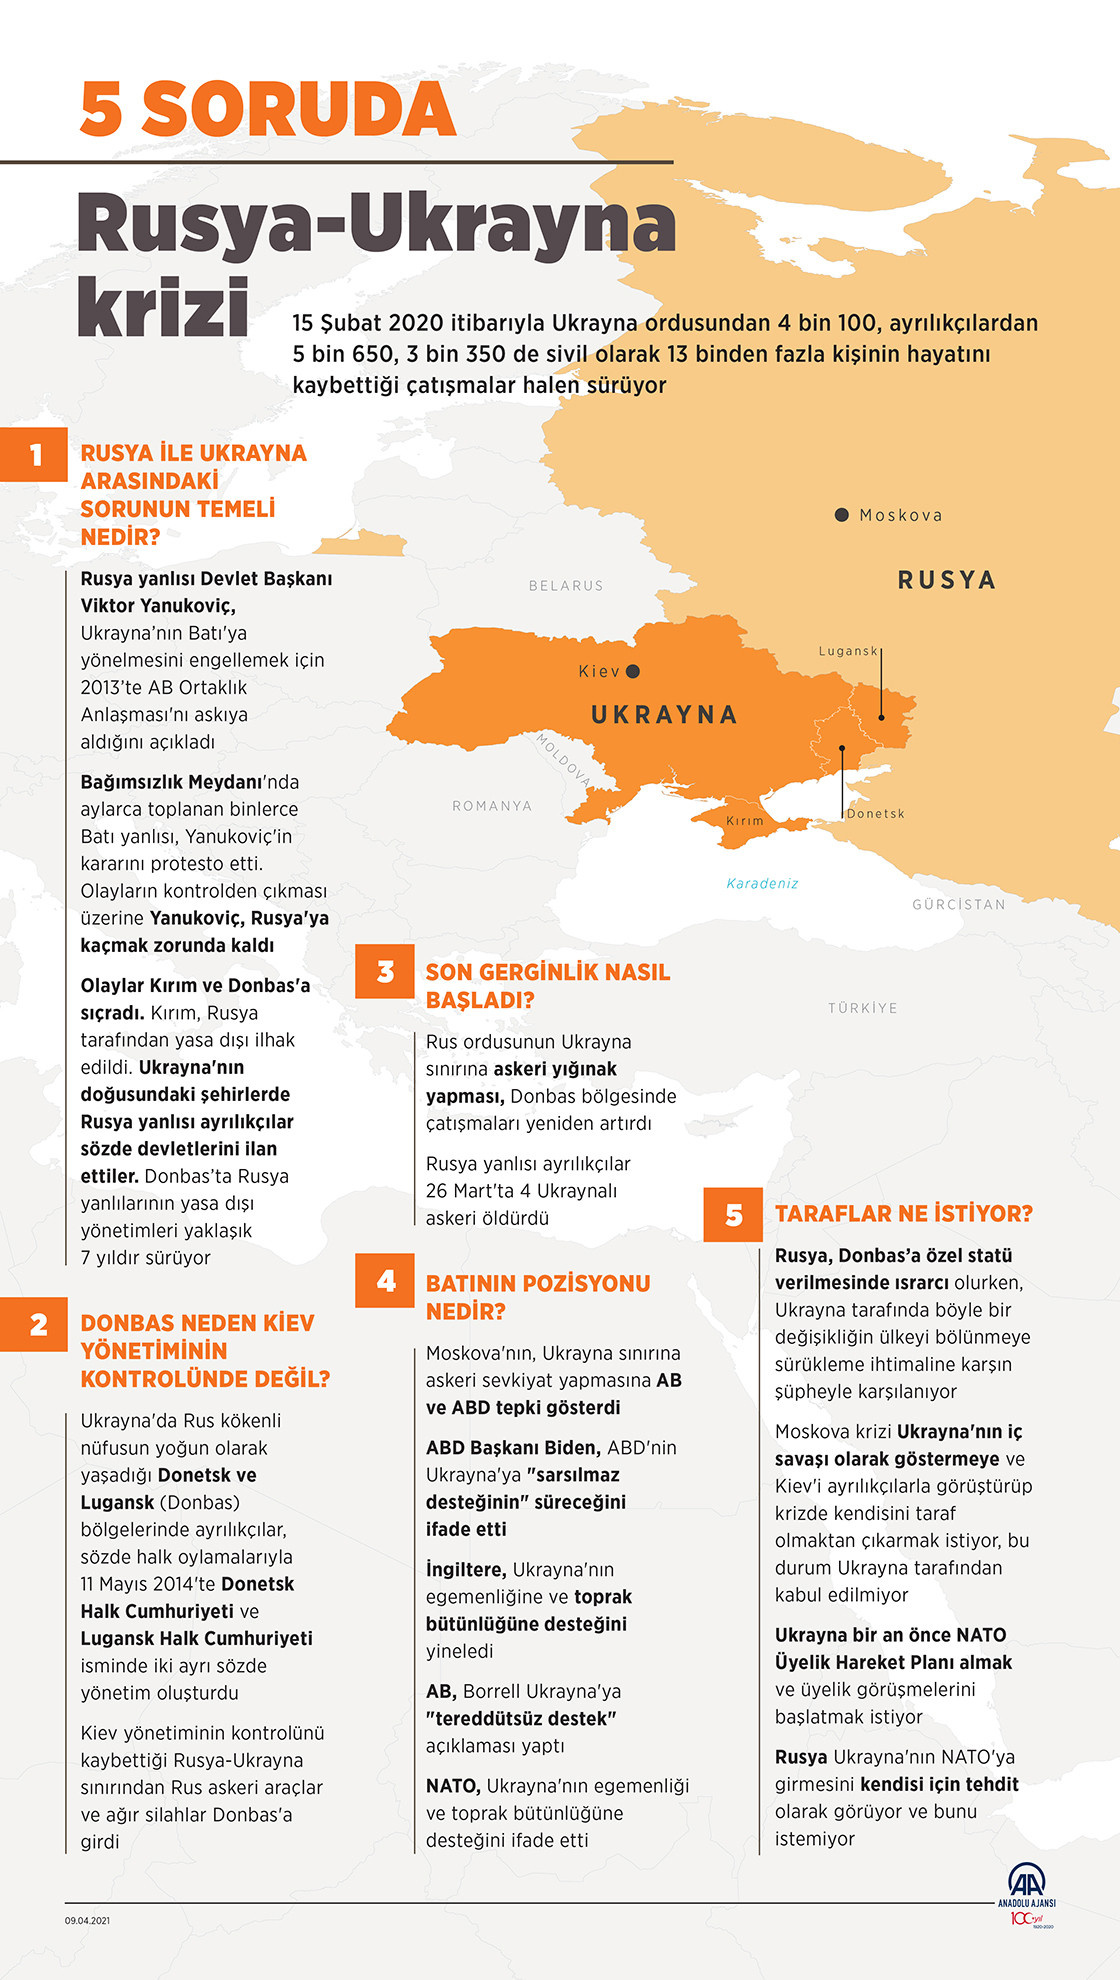 Ukrayna Rusya neden savaşıyor, Rusya Ukrayna sorunu nedir?